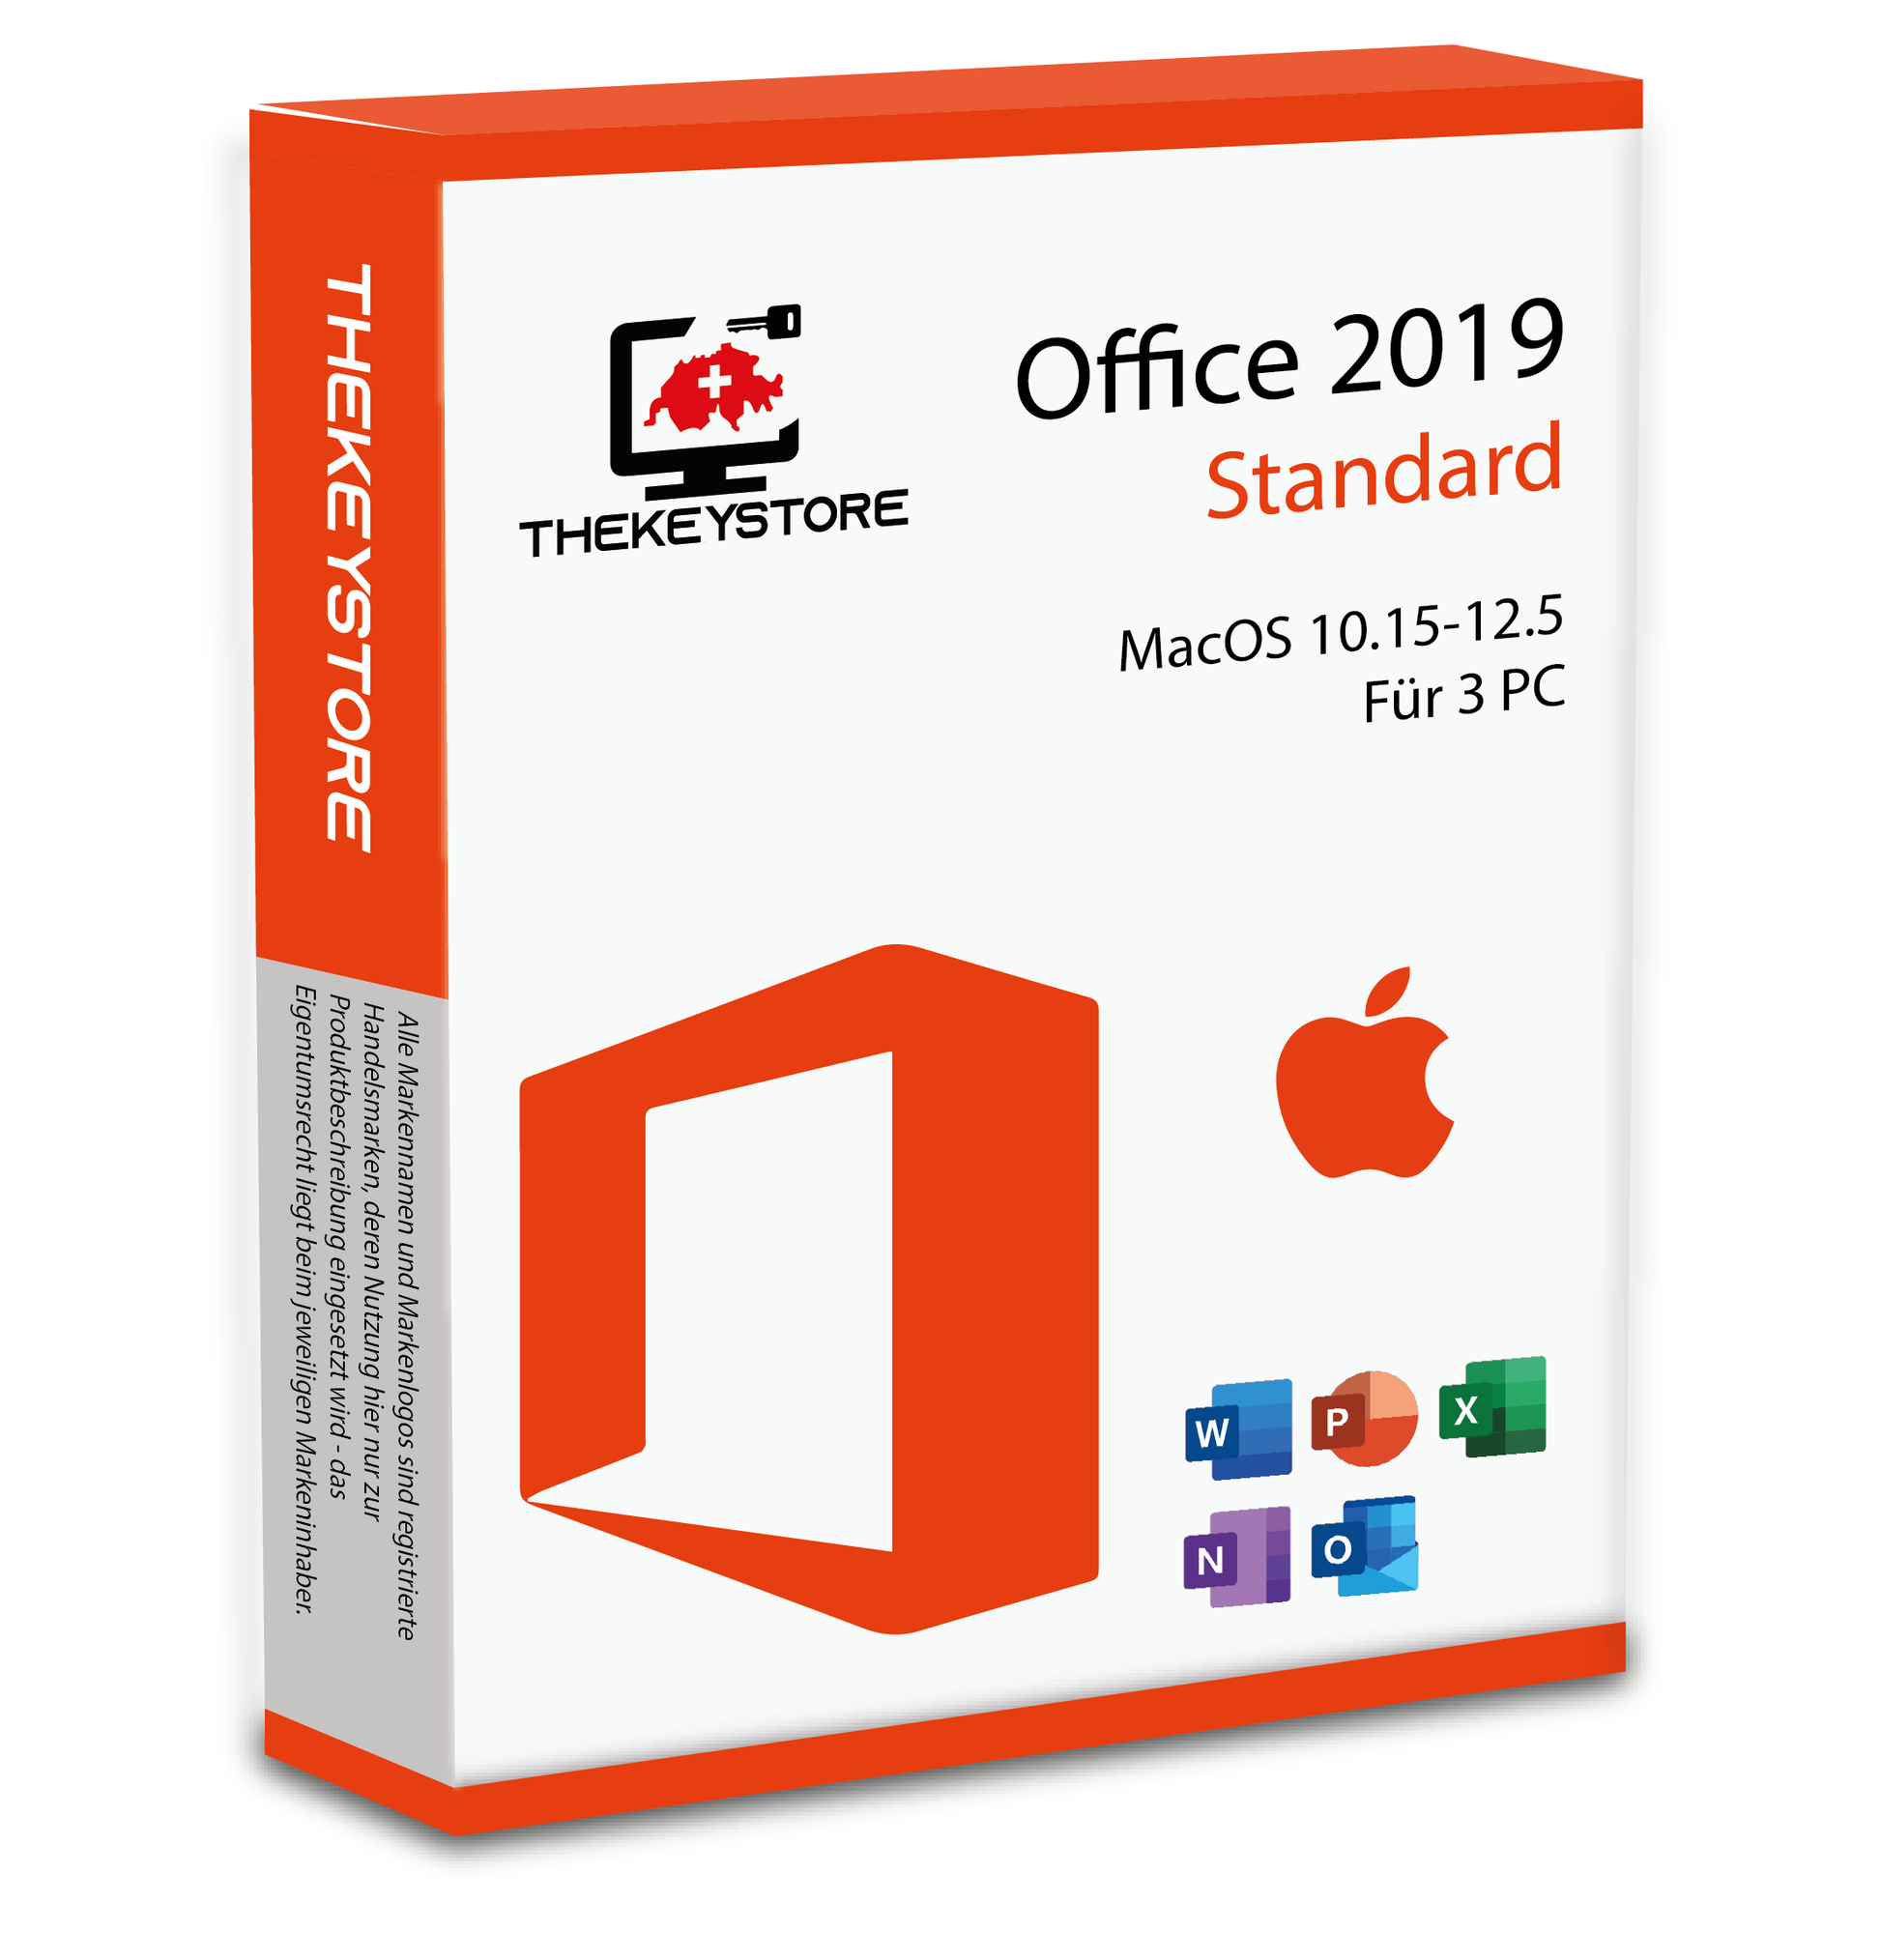 Microsoft Office 2019 Standard MacOS 10.15-12.5 - Für 3 PC - TheKeyStore Schweiz